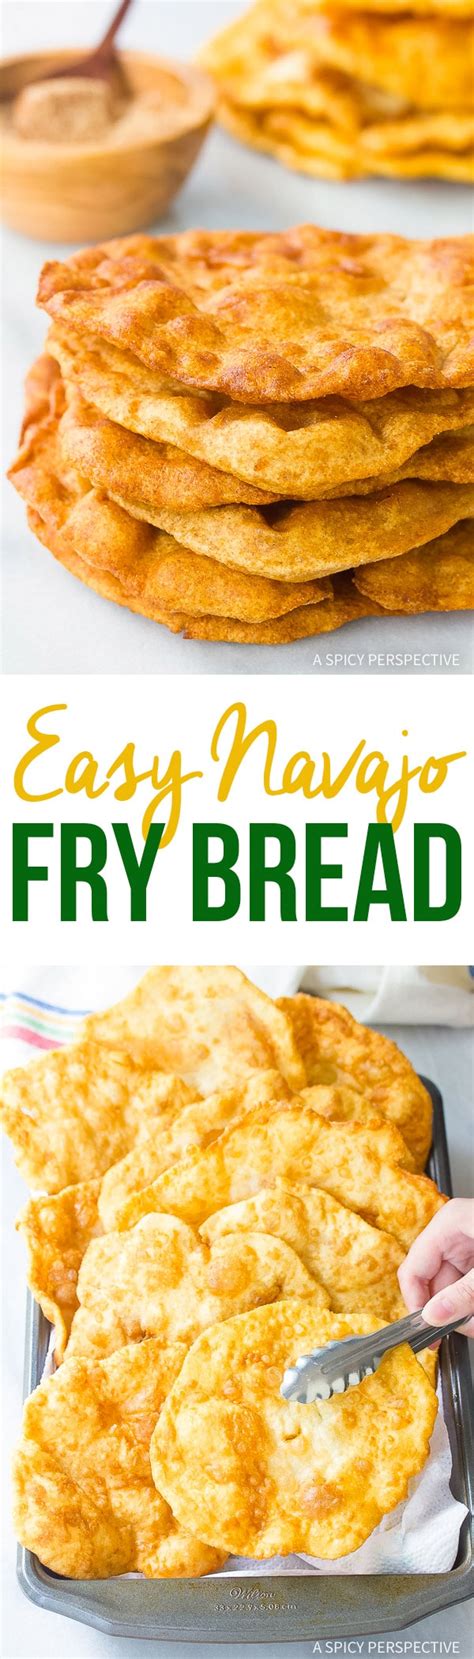 Easy Navajo Fry Bread A Spicy Perspective